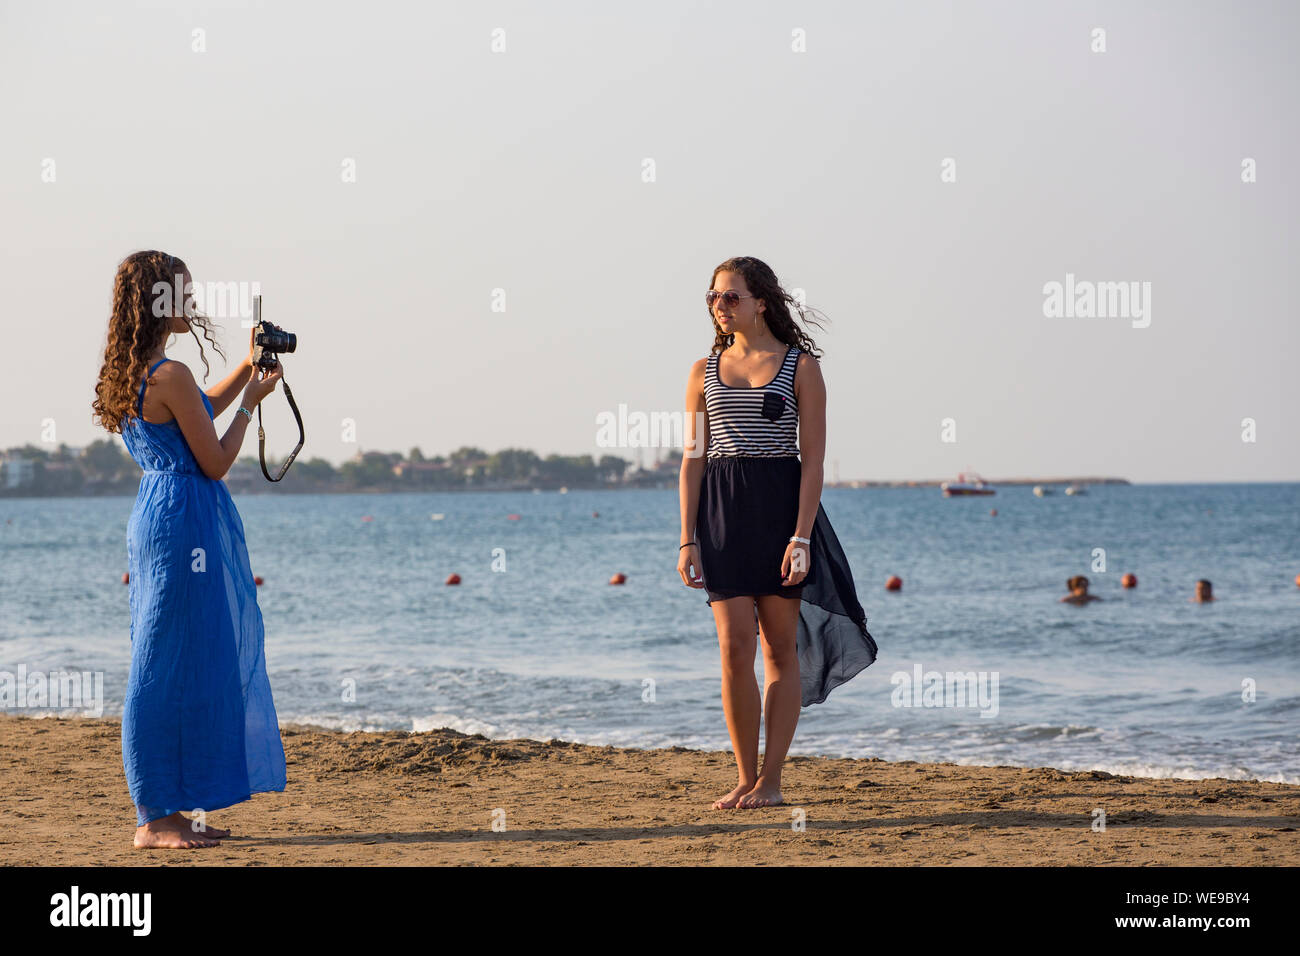 Una mujer joven toma una fotografía de otra niña de vacaciones en la playa Foto de stock